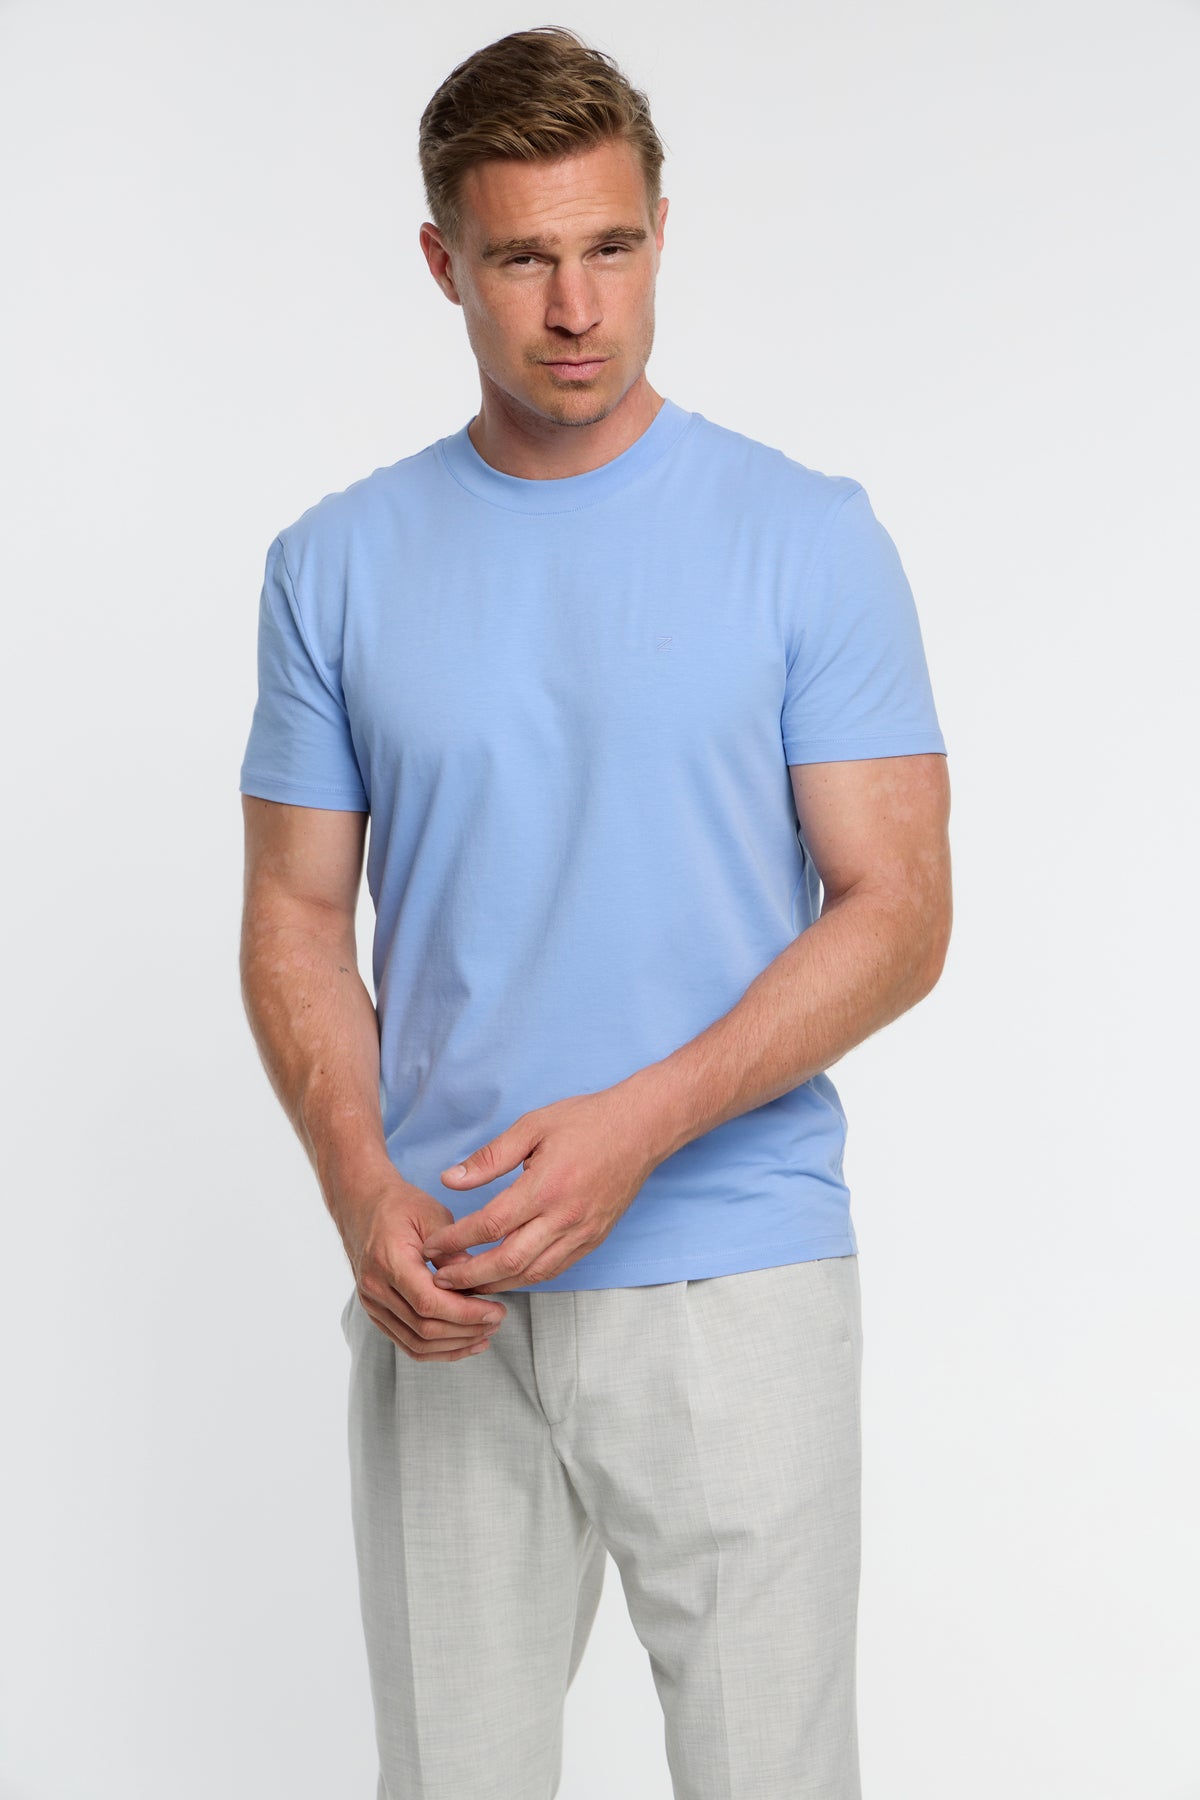 T-Shirt DiFlo 201-640 Blue